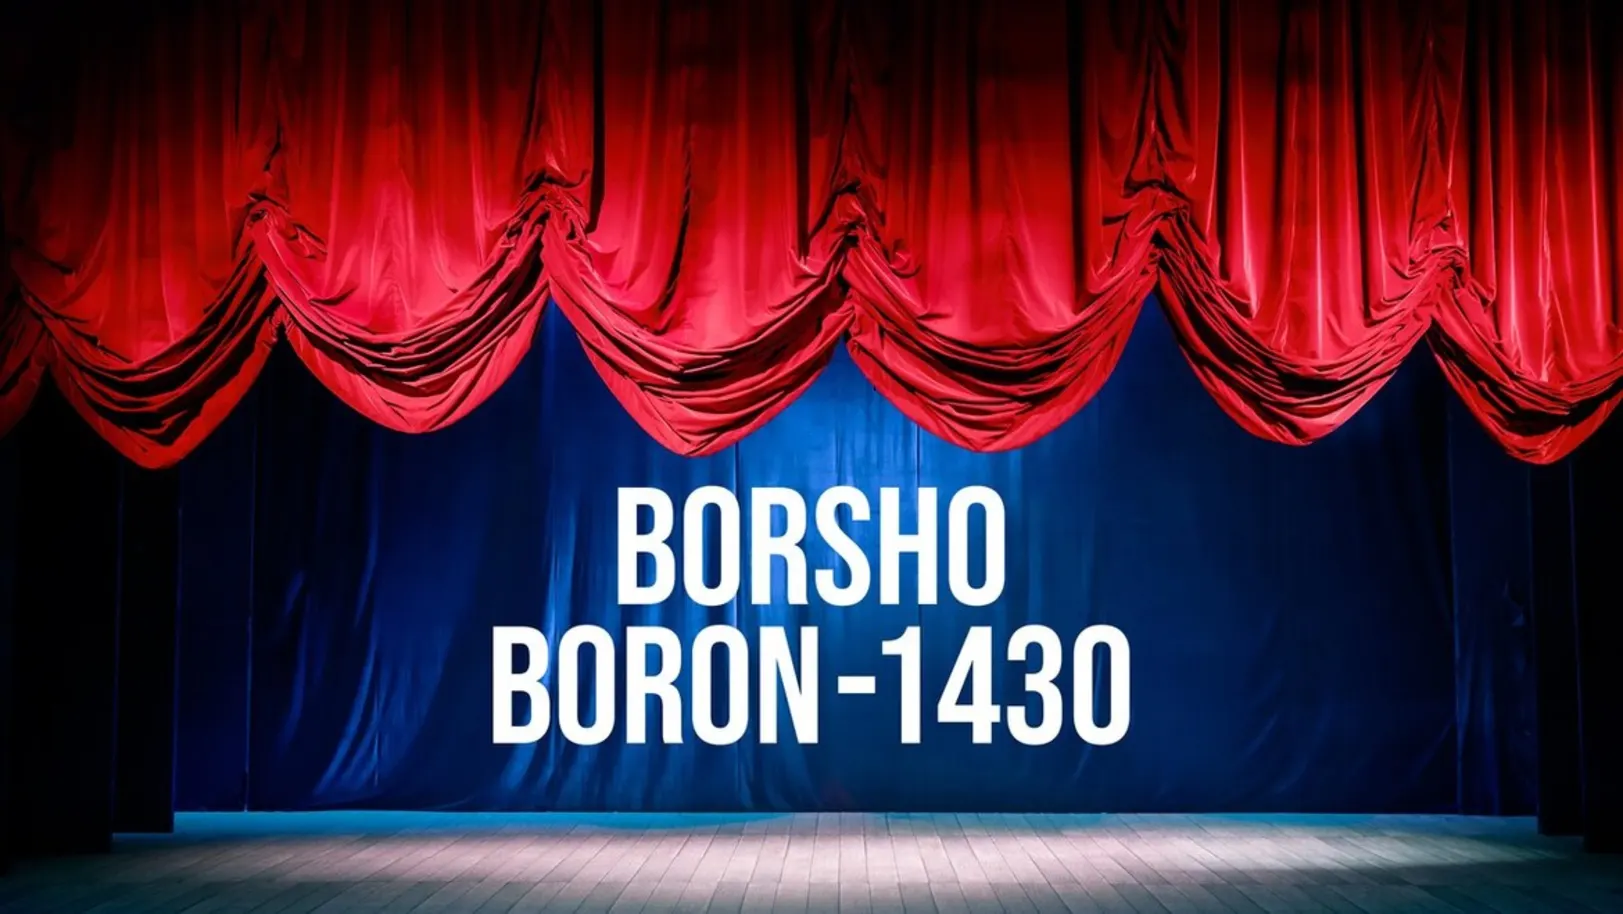 Borsho Boron- 1430 Streaming Now On Zee Bangla Cinema